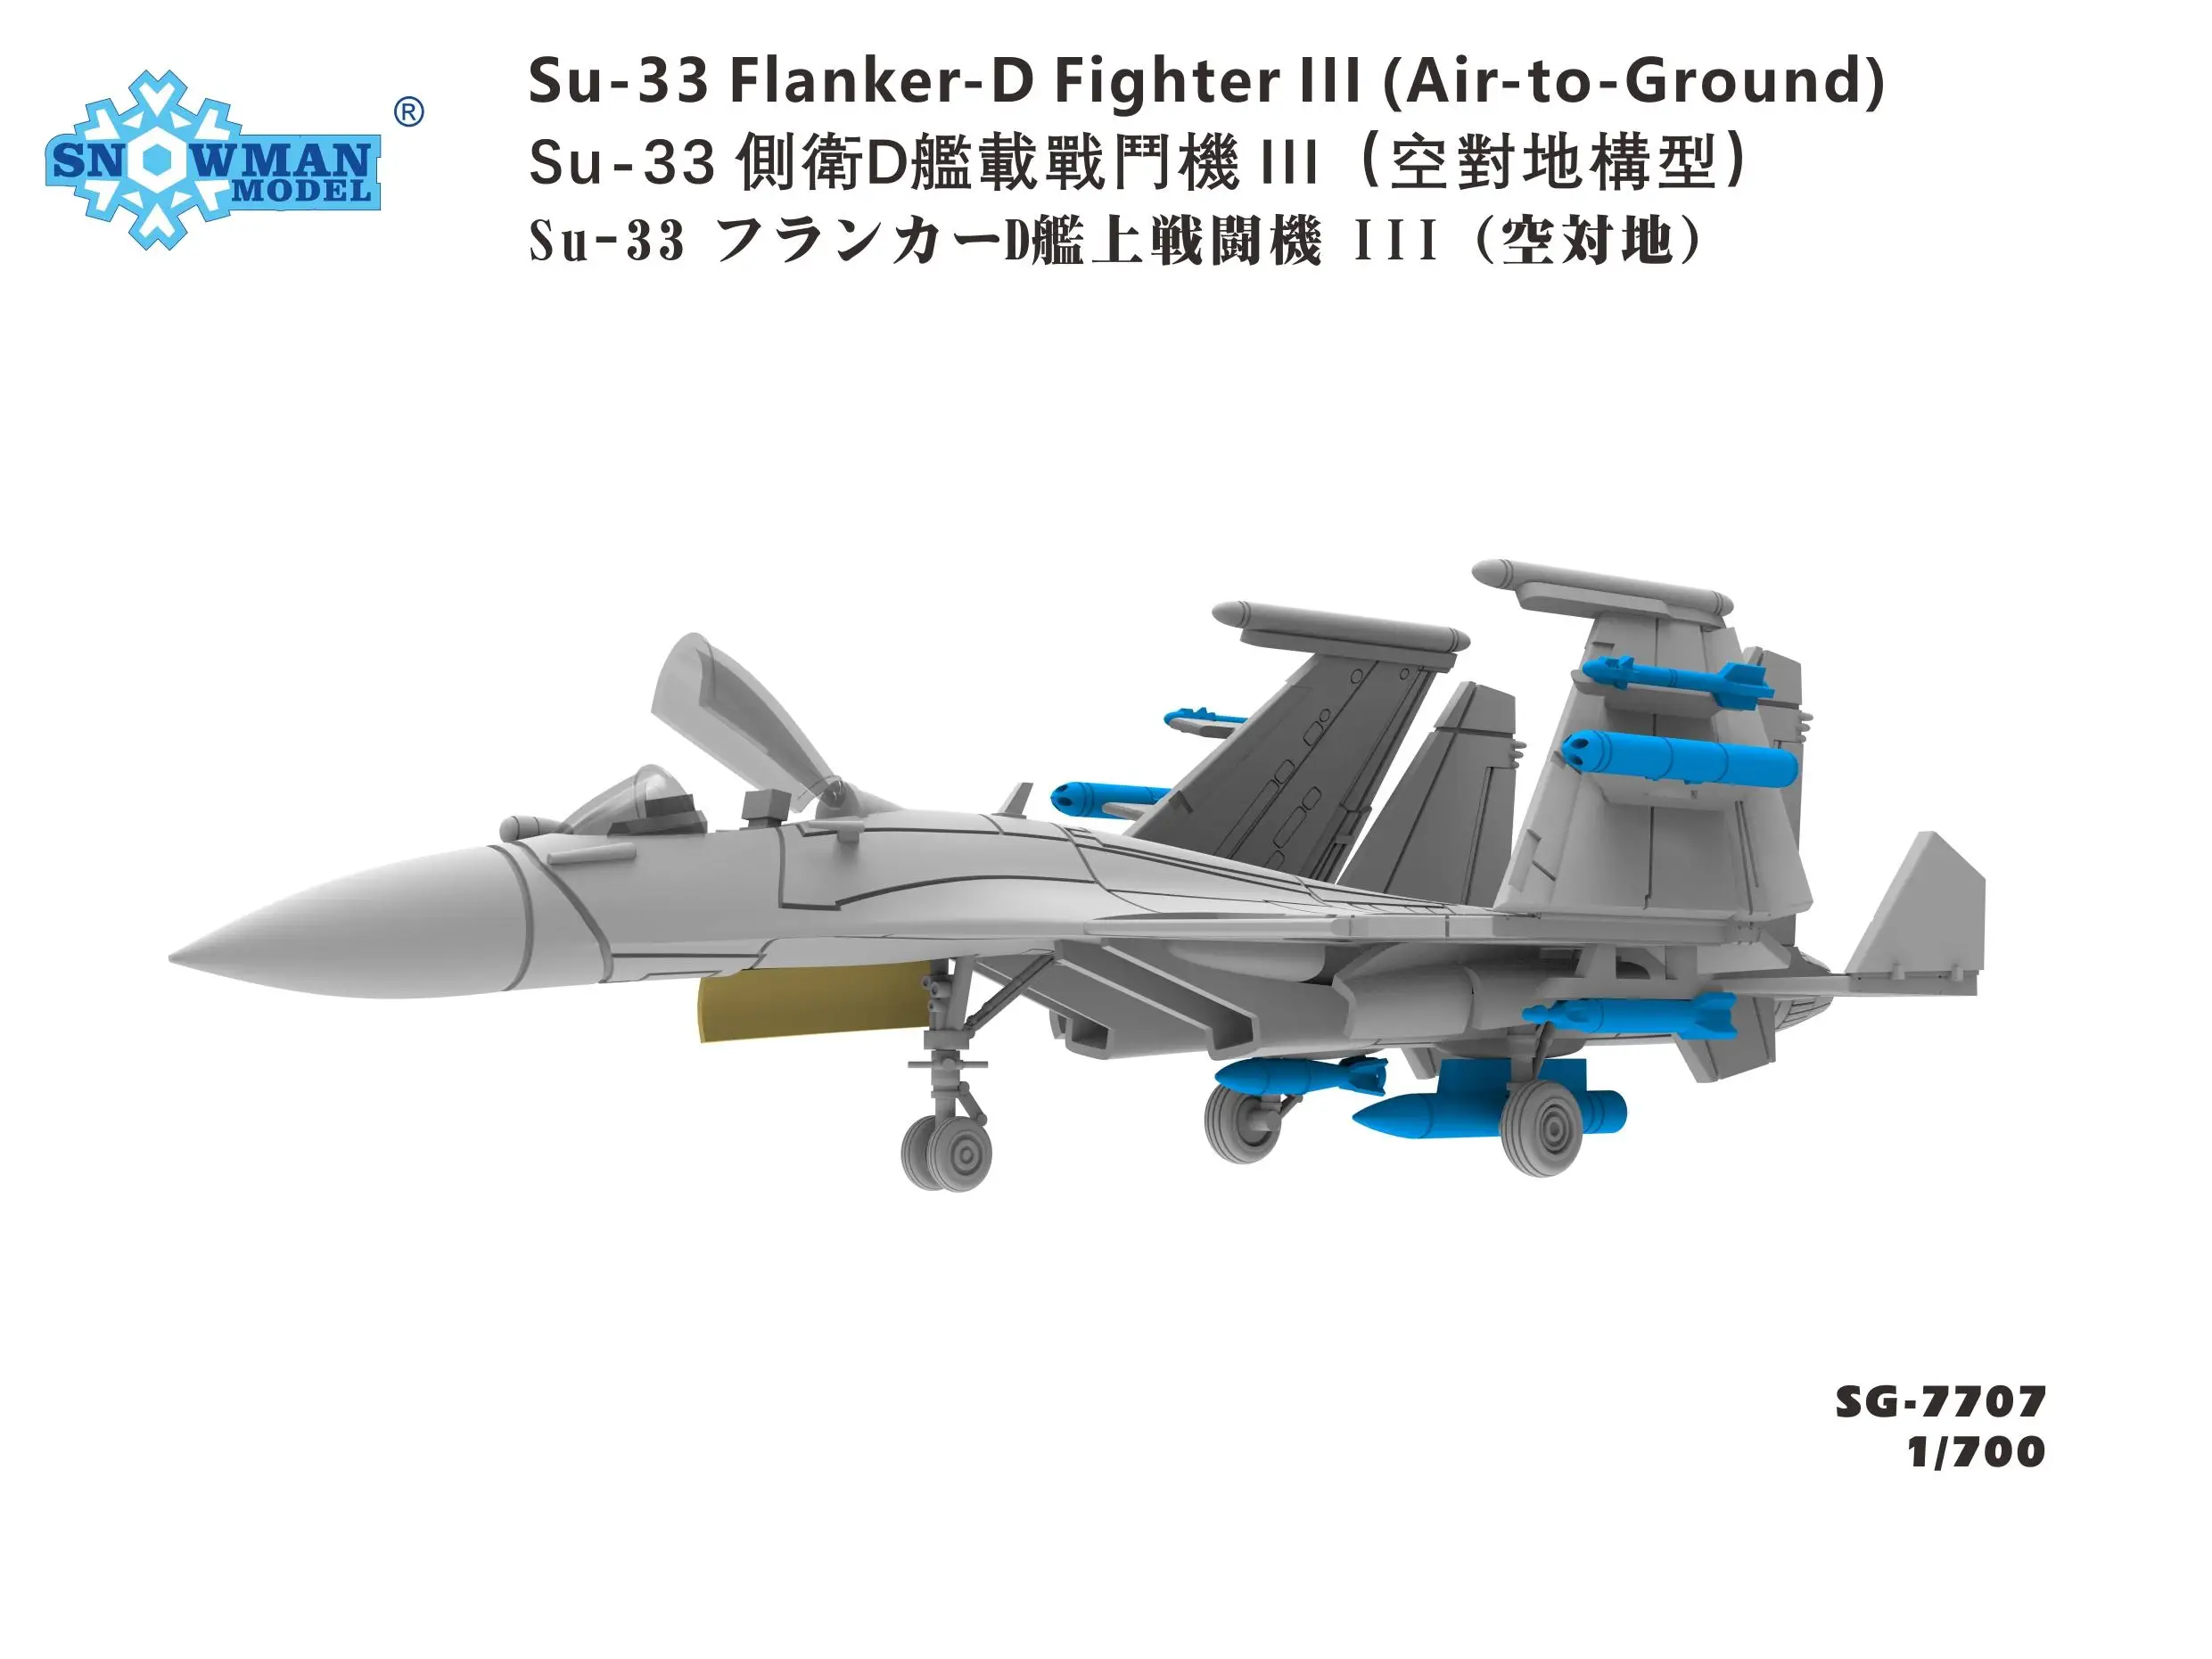 Snowman SG-7707 в масштабе 1/700 Истребитель Су-33 Flanker-d Ill (воздух-земля) - 3